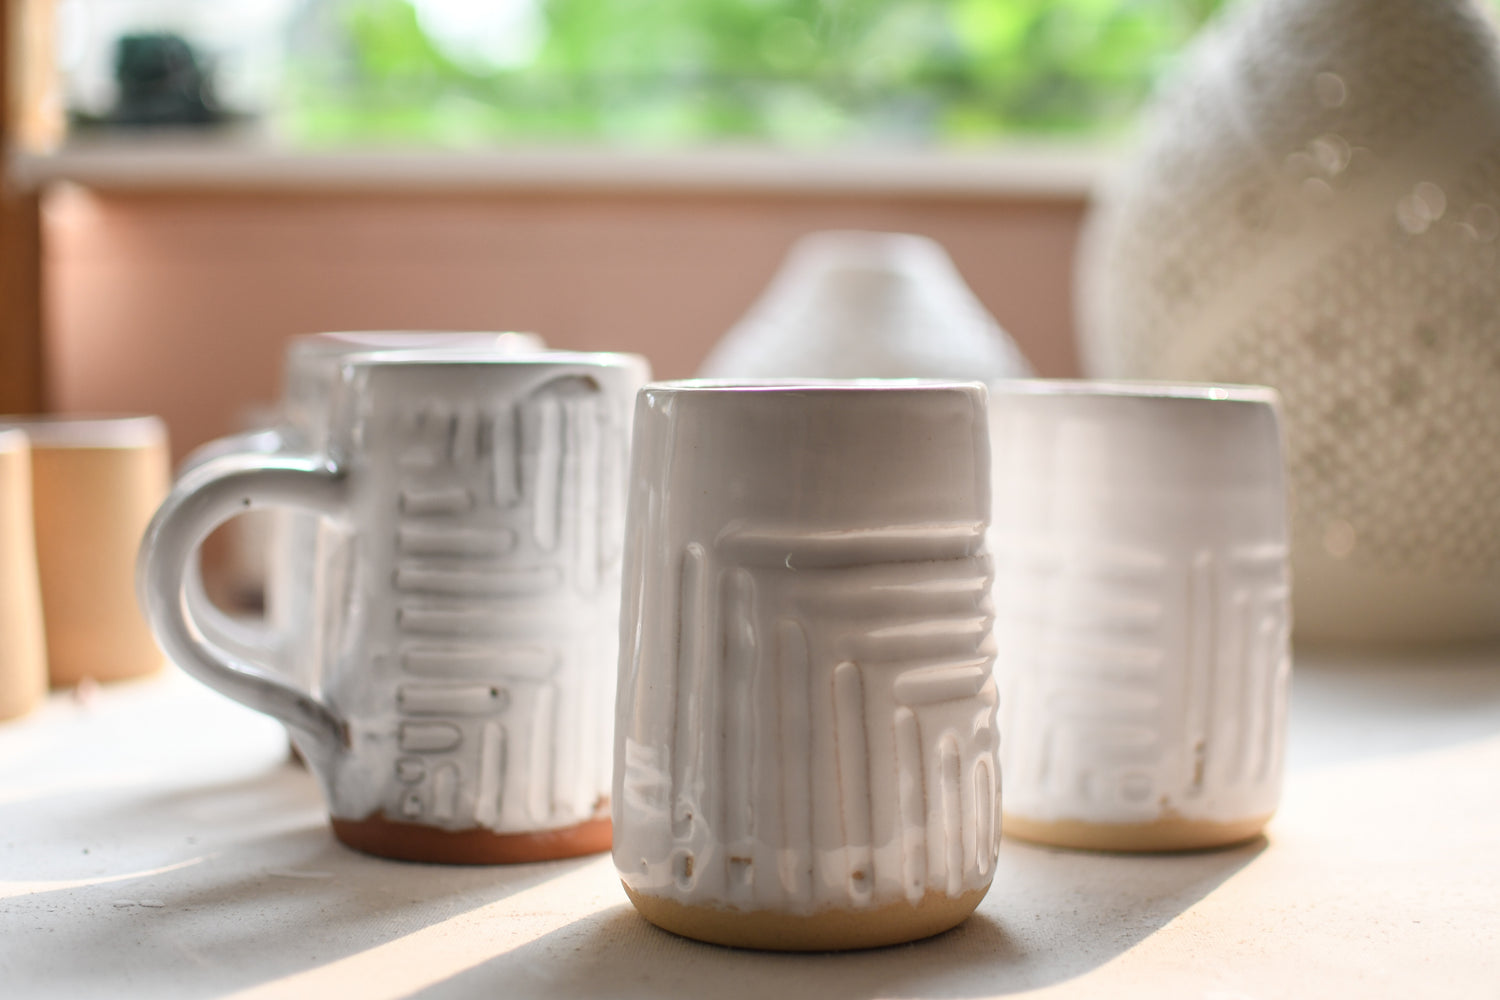 coffee & tea mugs/vessels